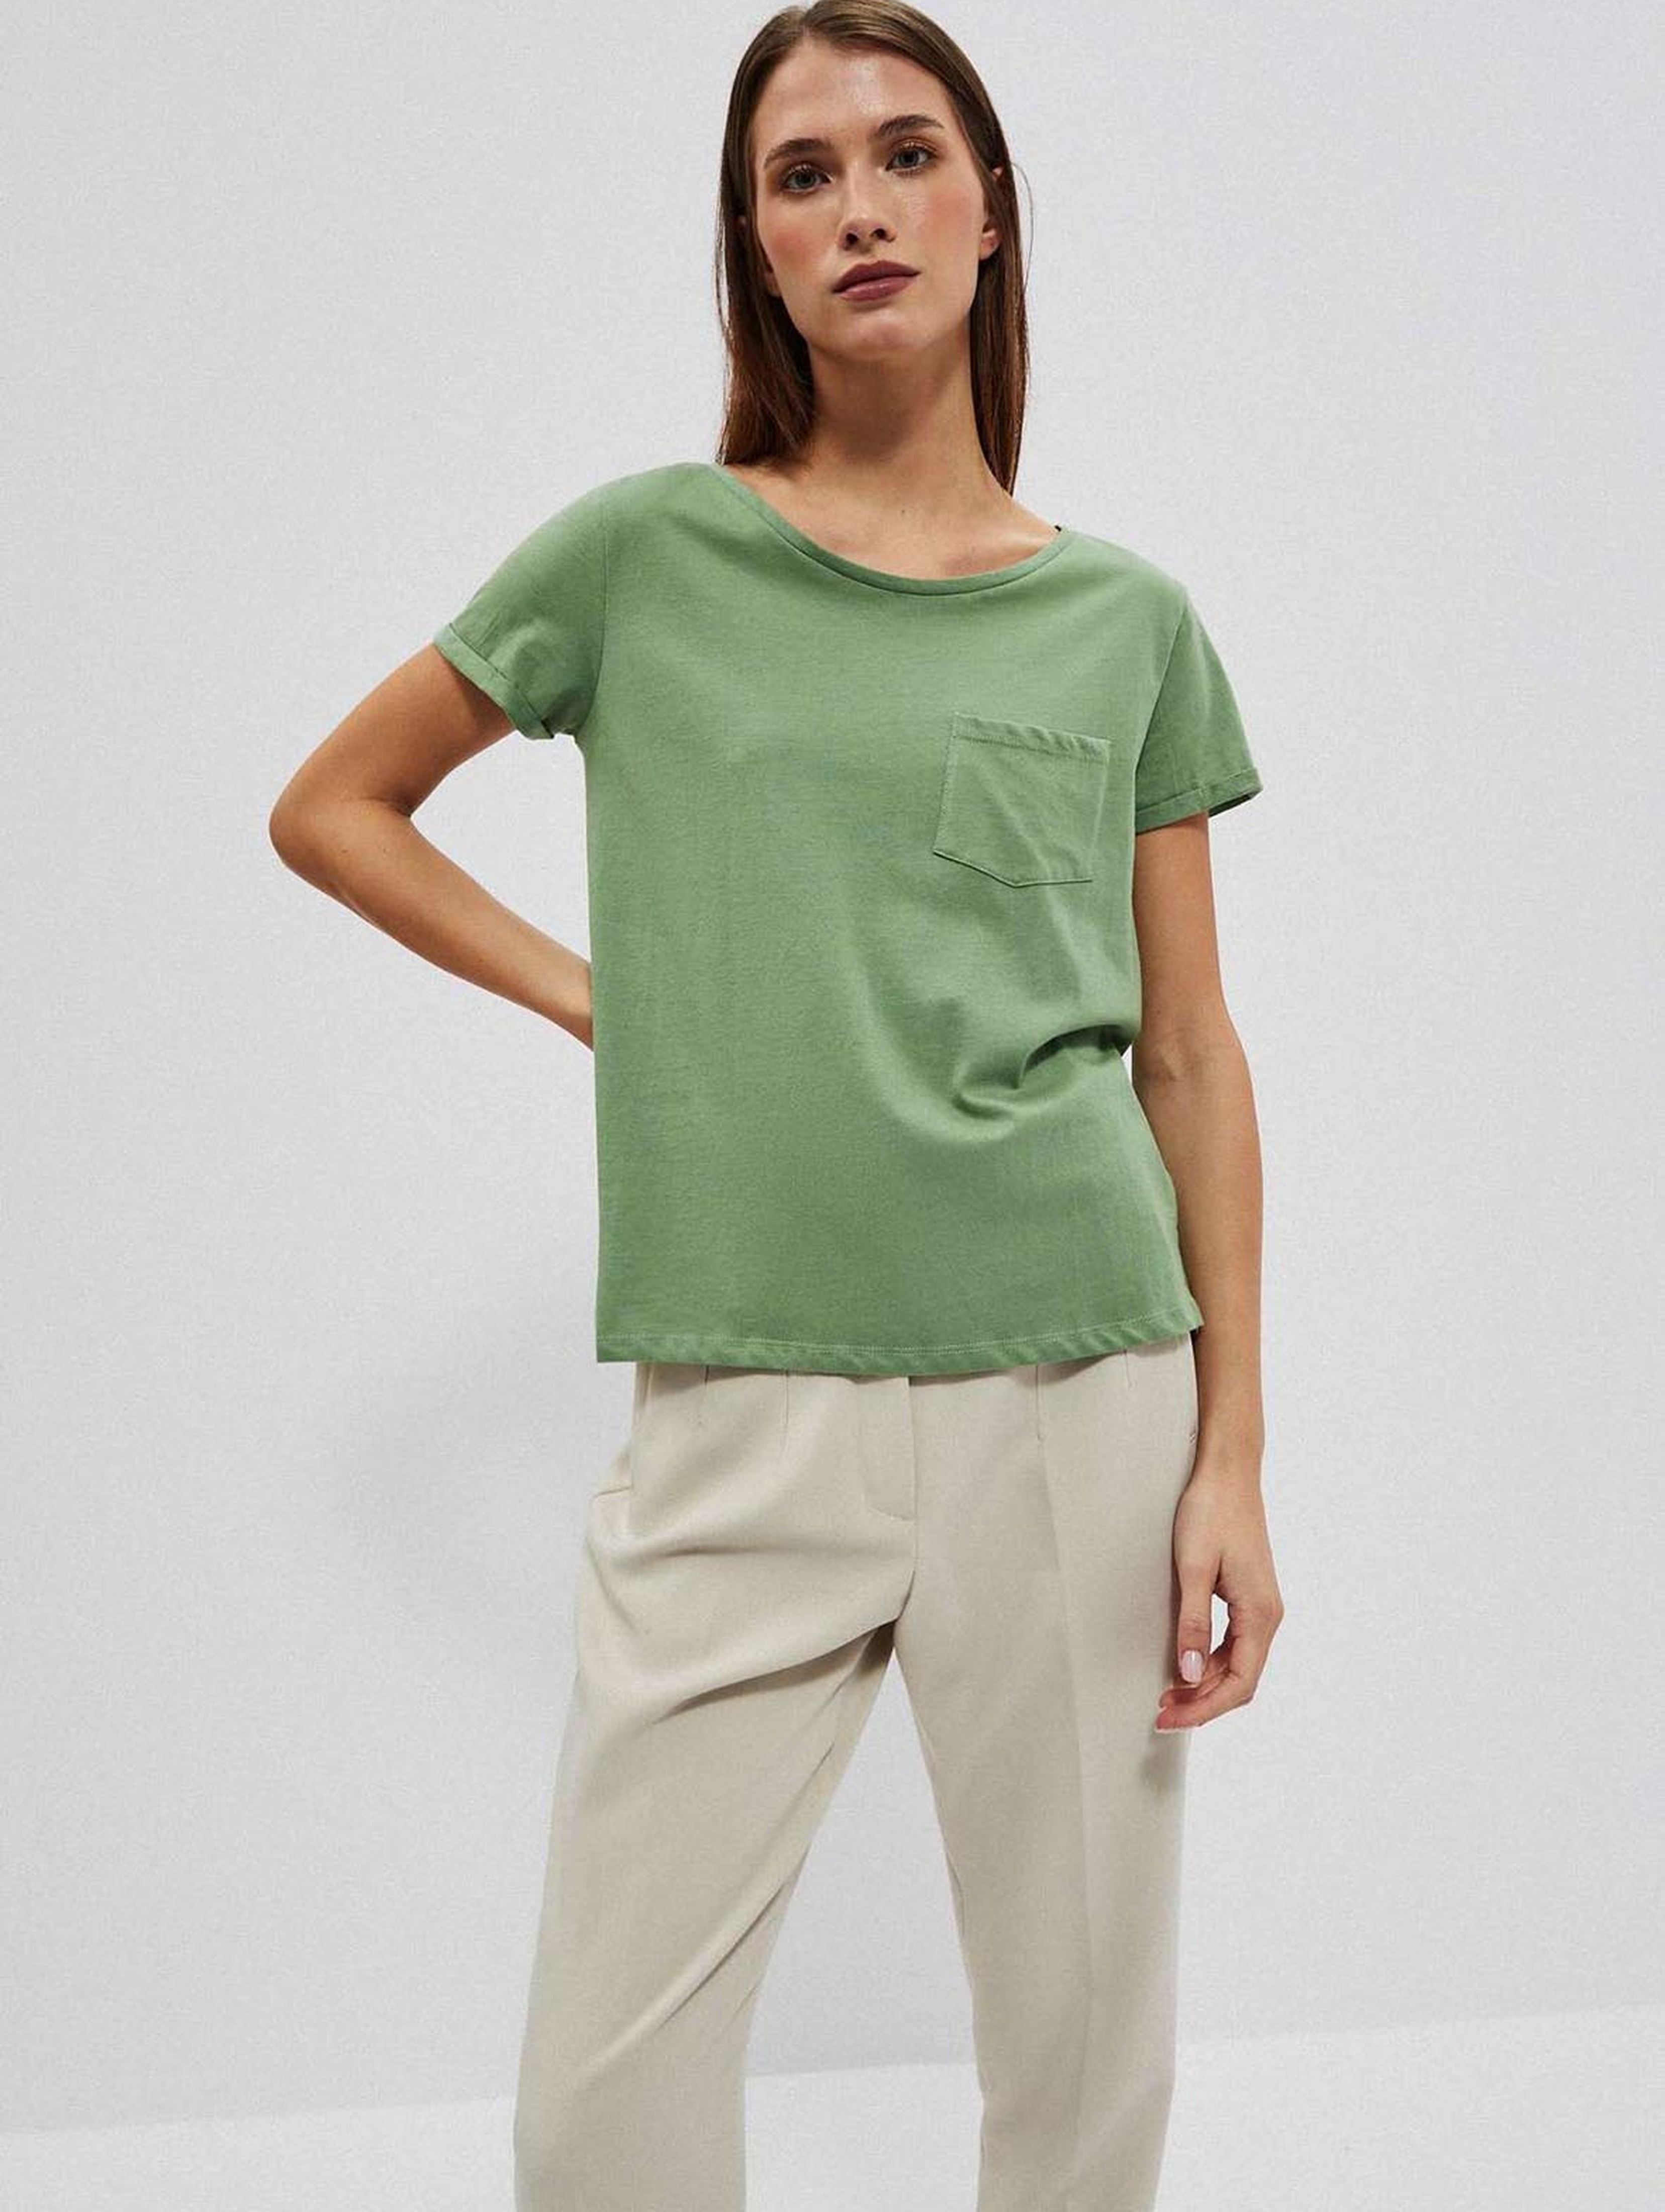 Bawełniany oliwkowy t-shirt damski z kieszonką